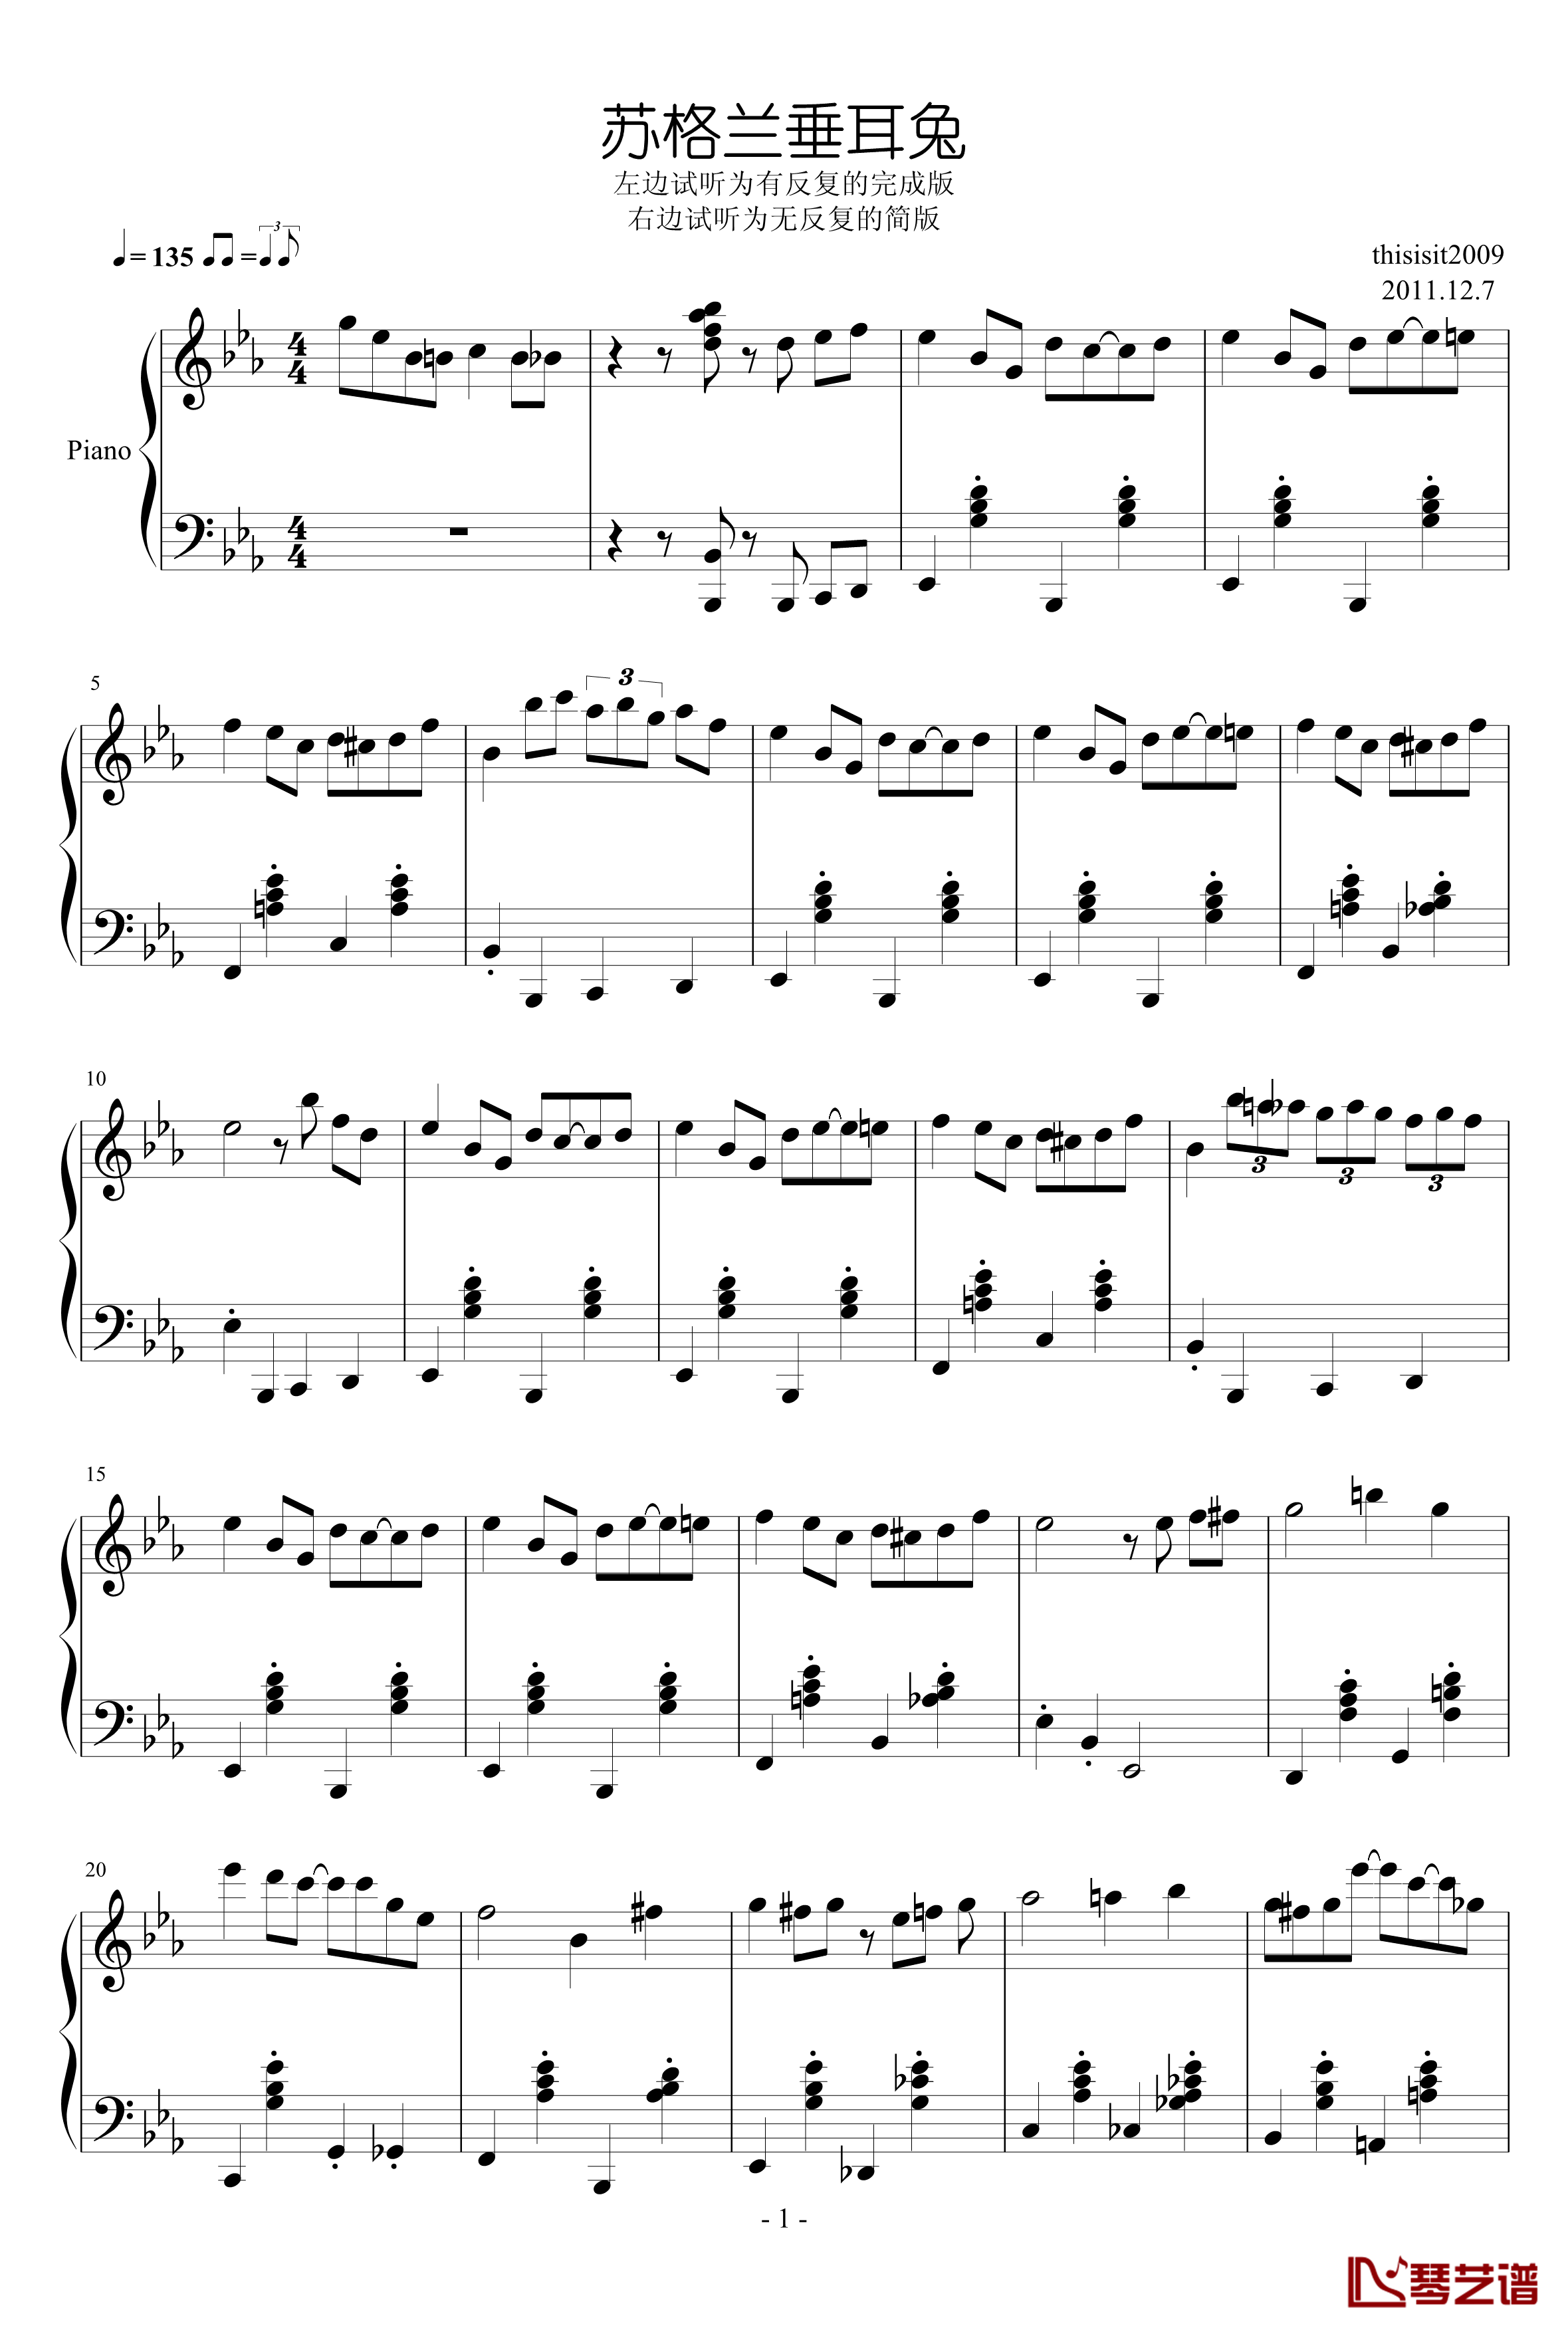 苏格兰垂耳兔钢琴谱-爵士-thisisit20091